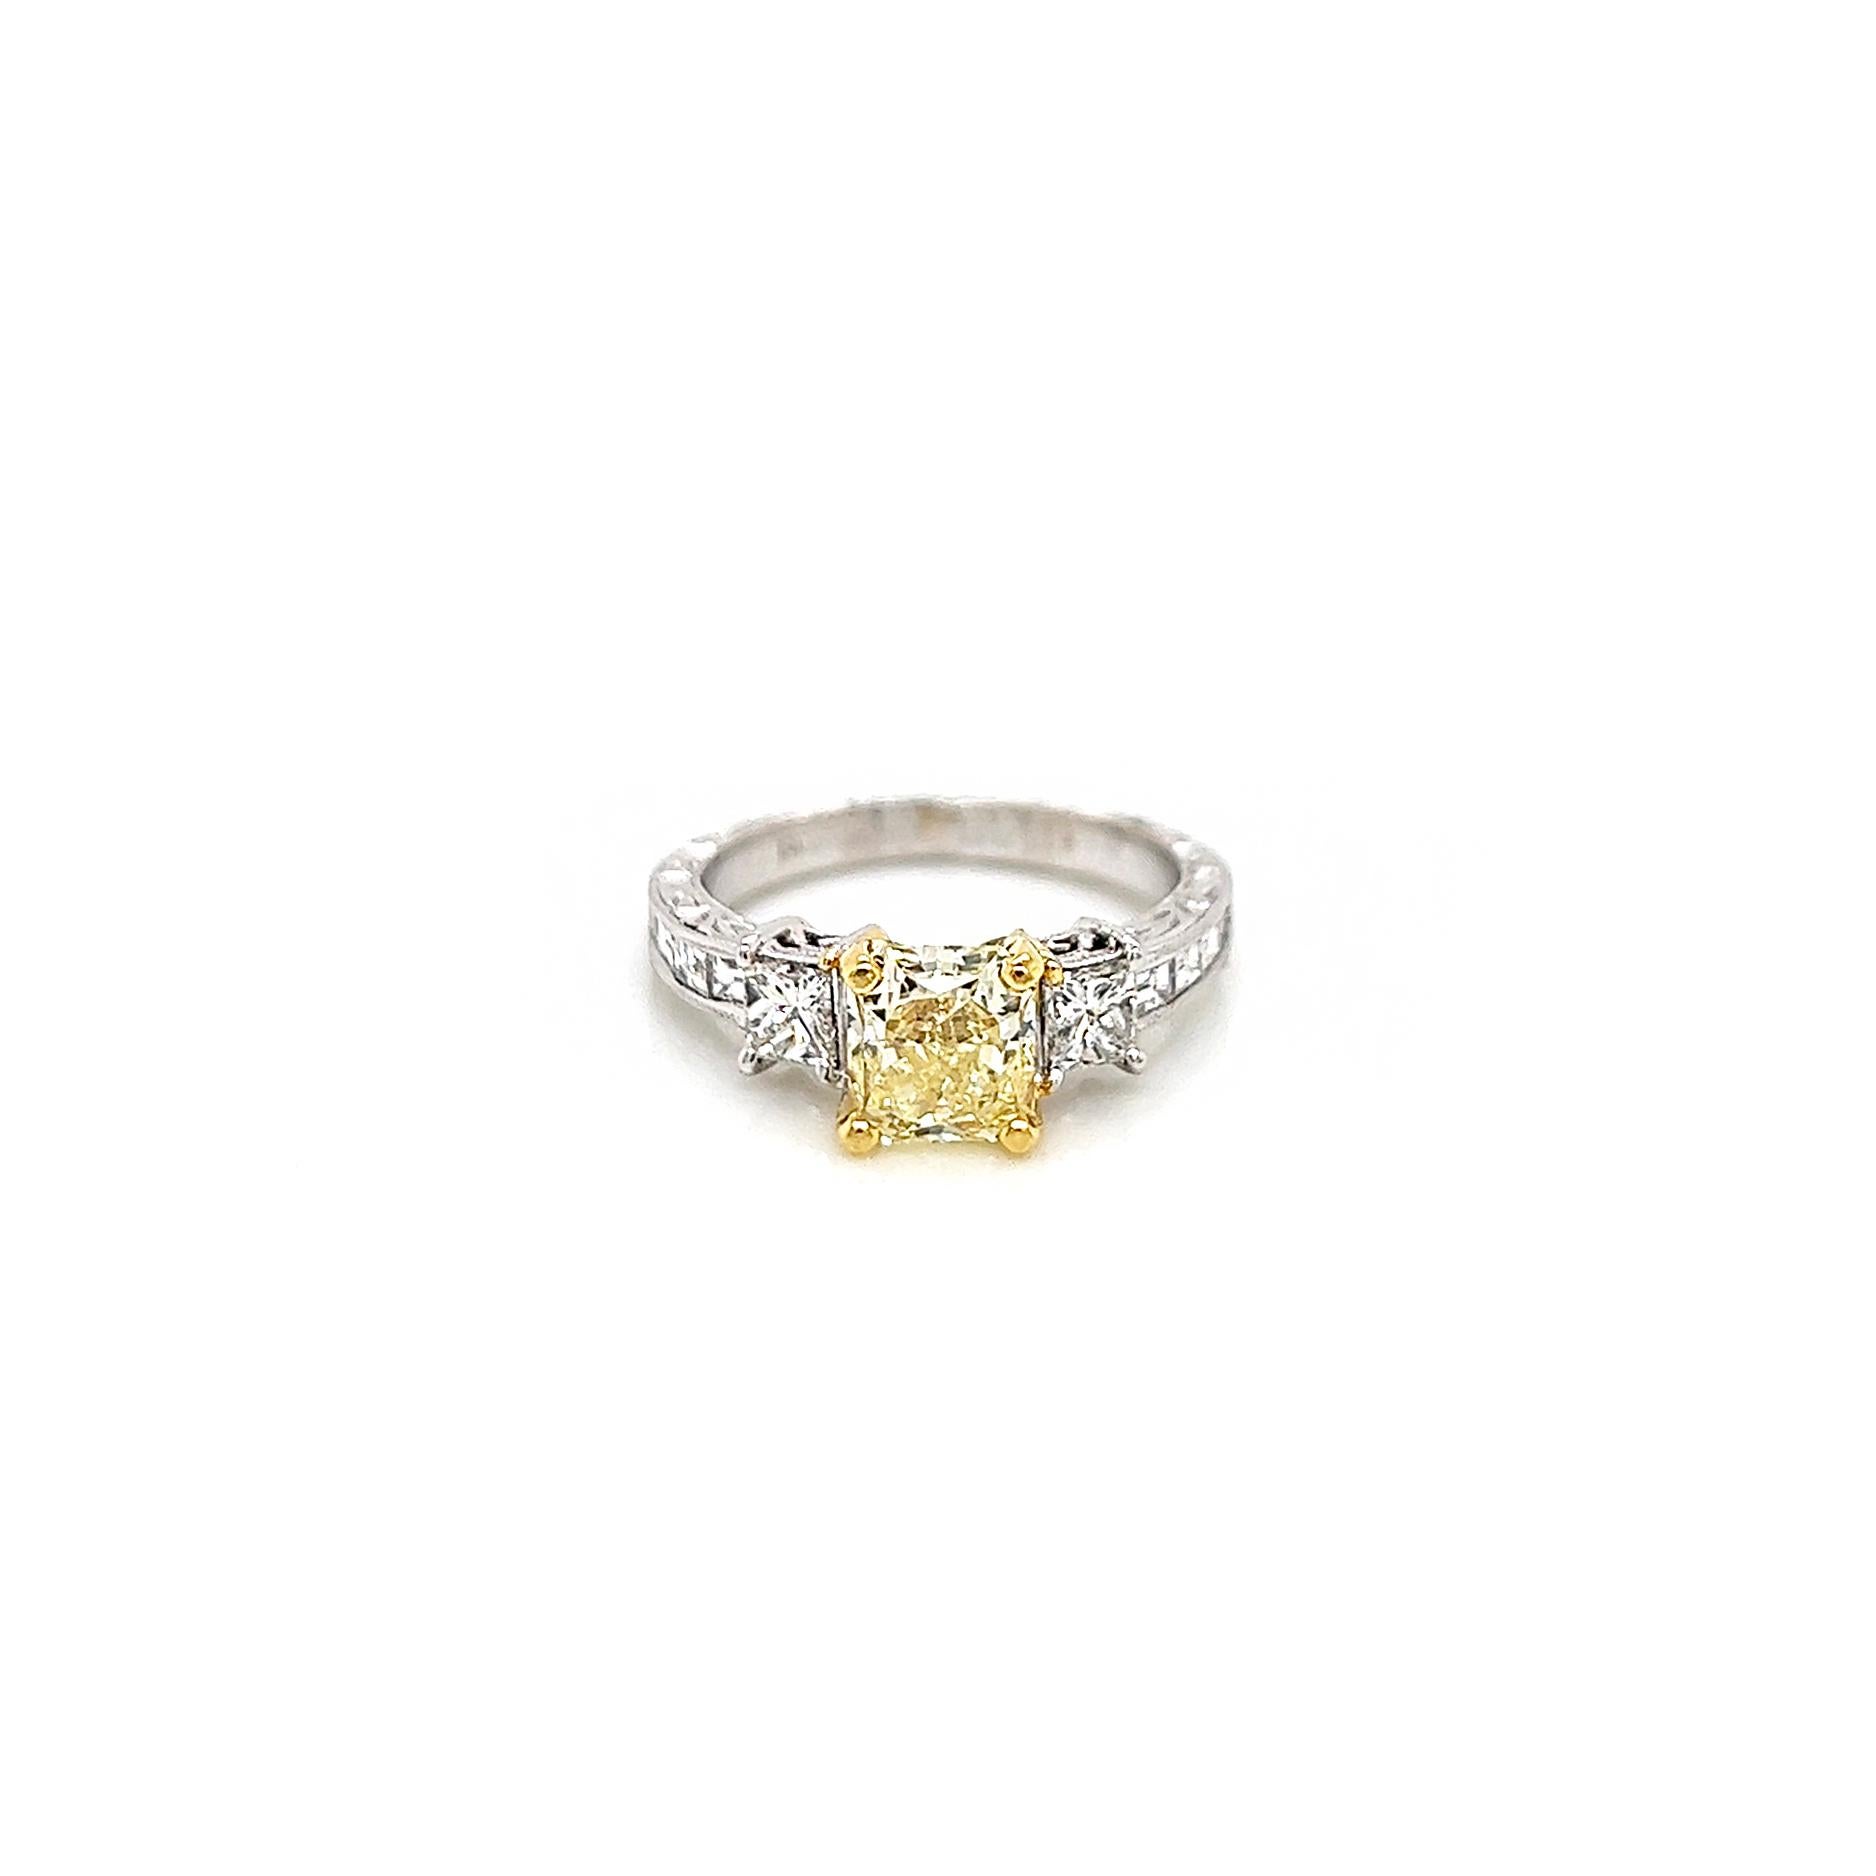 2.20 Total Carat Fancy Yellow Diamond Ladies Engagement Ring. GIA Certified.

